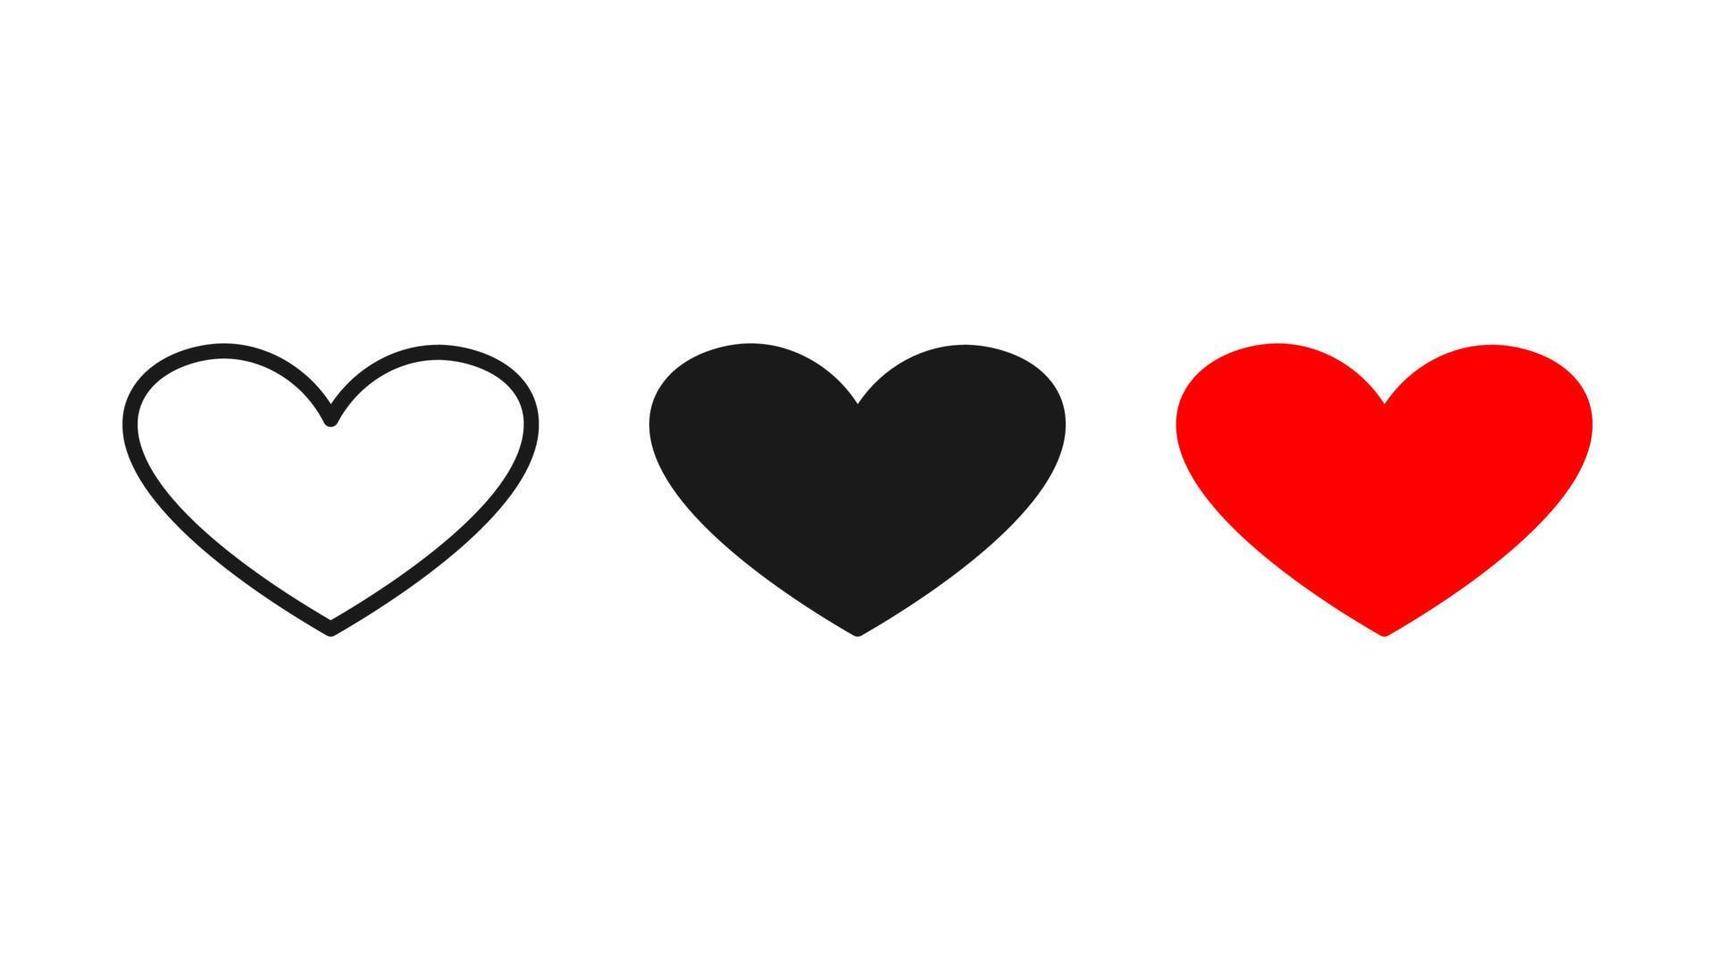 colección de icono de corazón, símbolo del diseño moderno de estilo plano de icono de amor aislado sobre fondo blanco. ilustración vectorial. vector